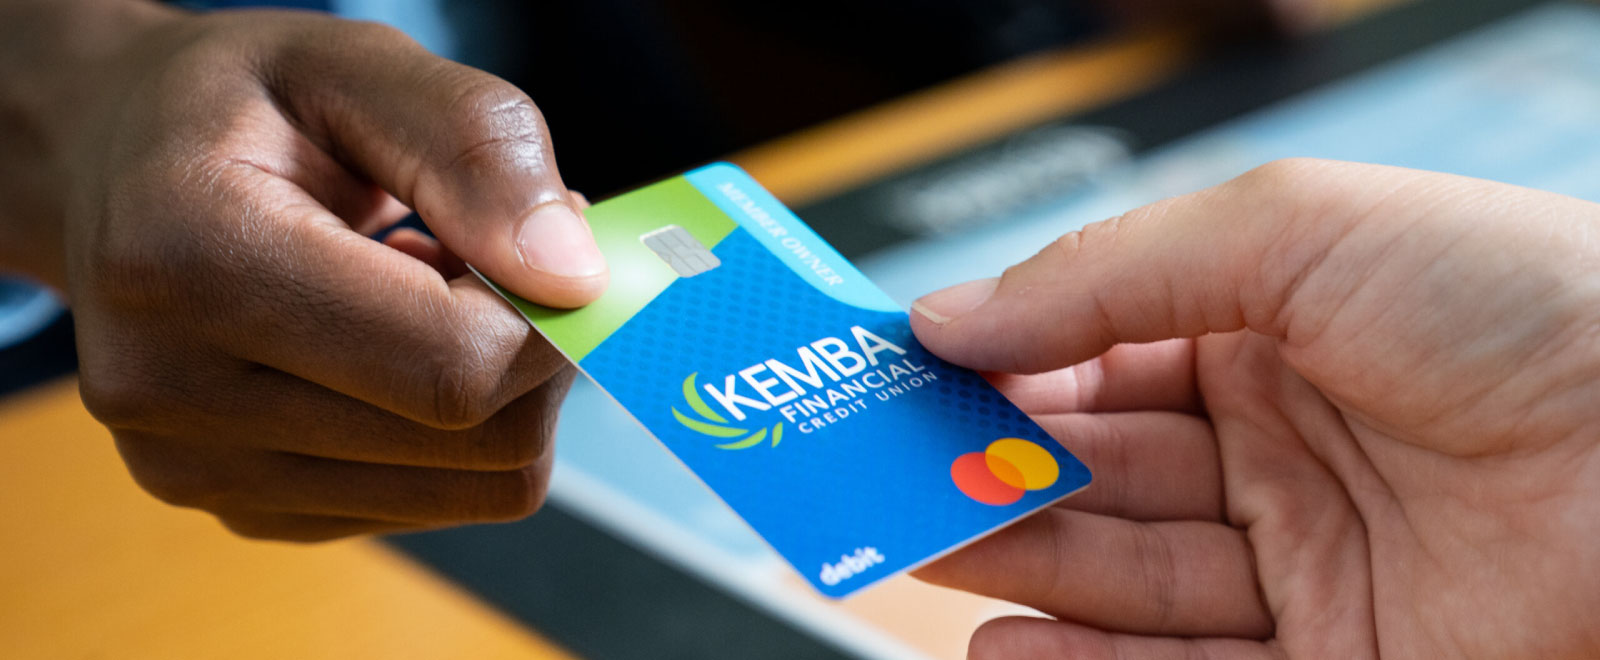 KEMBA teller handing KEMBA debit card to new member